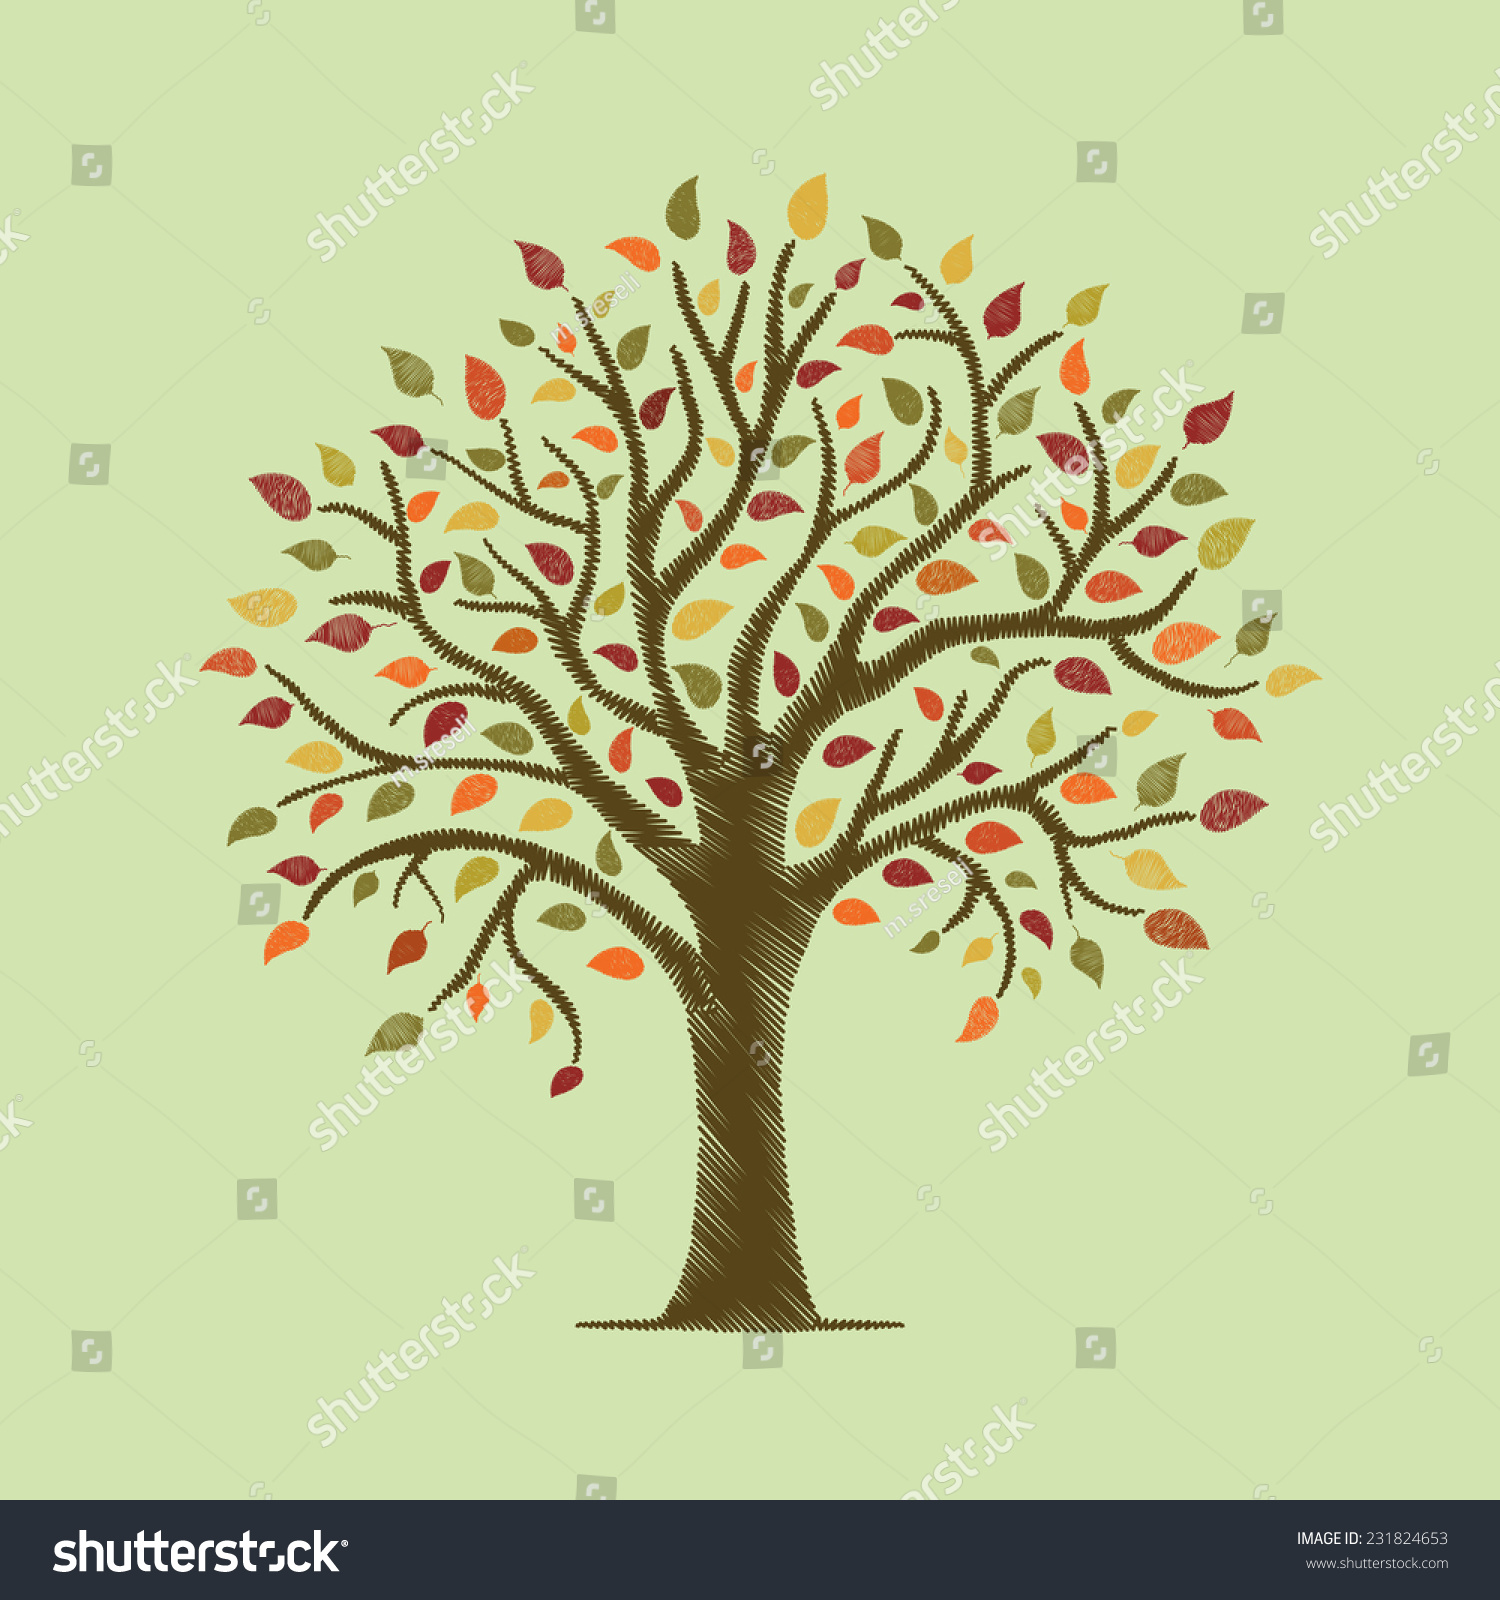 Autumn Tree Stock Vector Illustration 231824653 : Shutterstock